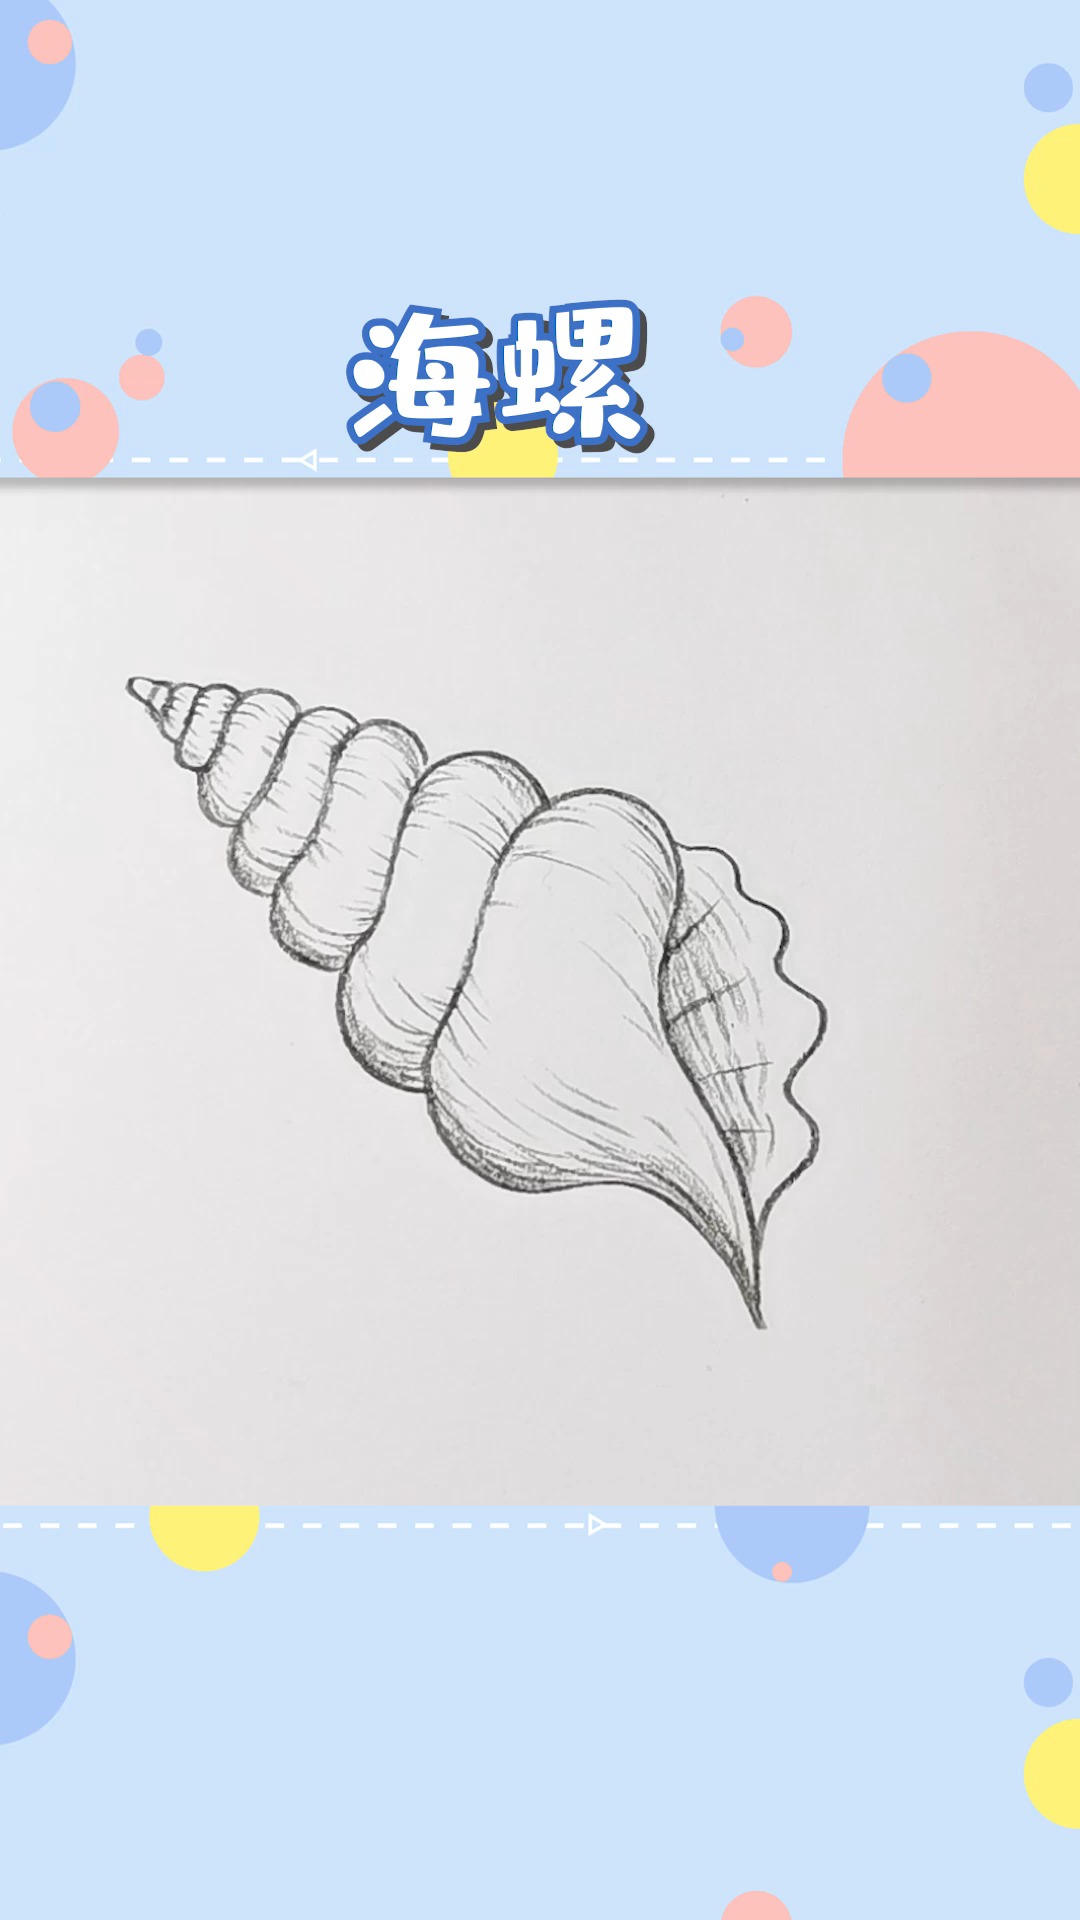 简笔画海螺的画法图片